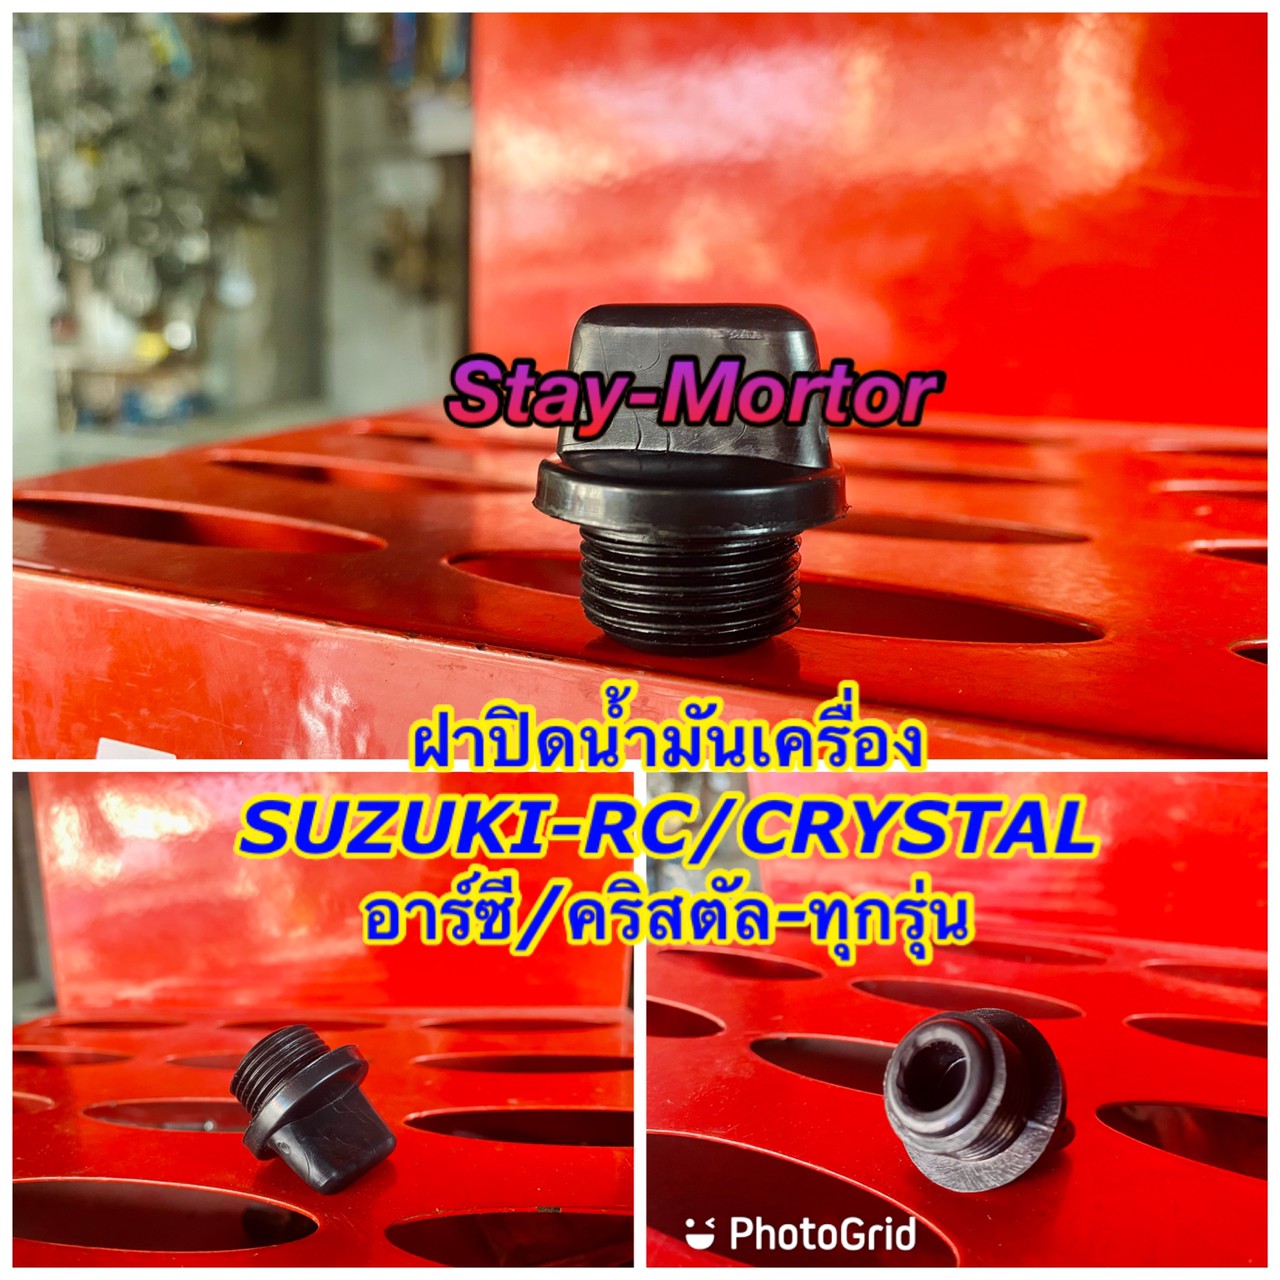 ฝาปิดน้ำมันเครื่อง SUZUKI RC80/RC100/RC110/CRYSTAL-ทุกรุ่น (สีดำ) จุกปิดน้ำมันเครื่องรถมอเตอร์ไซค์ ซูซูกิ-อาร์ซี80/อาร์ซี100/อาร์ซี110/คริสตัล-ทุกรุ่น